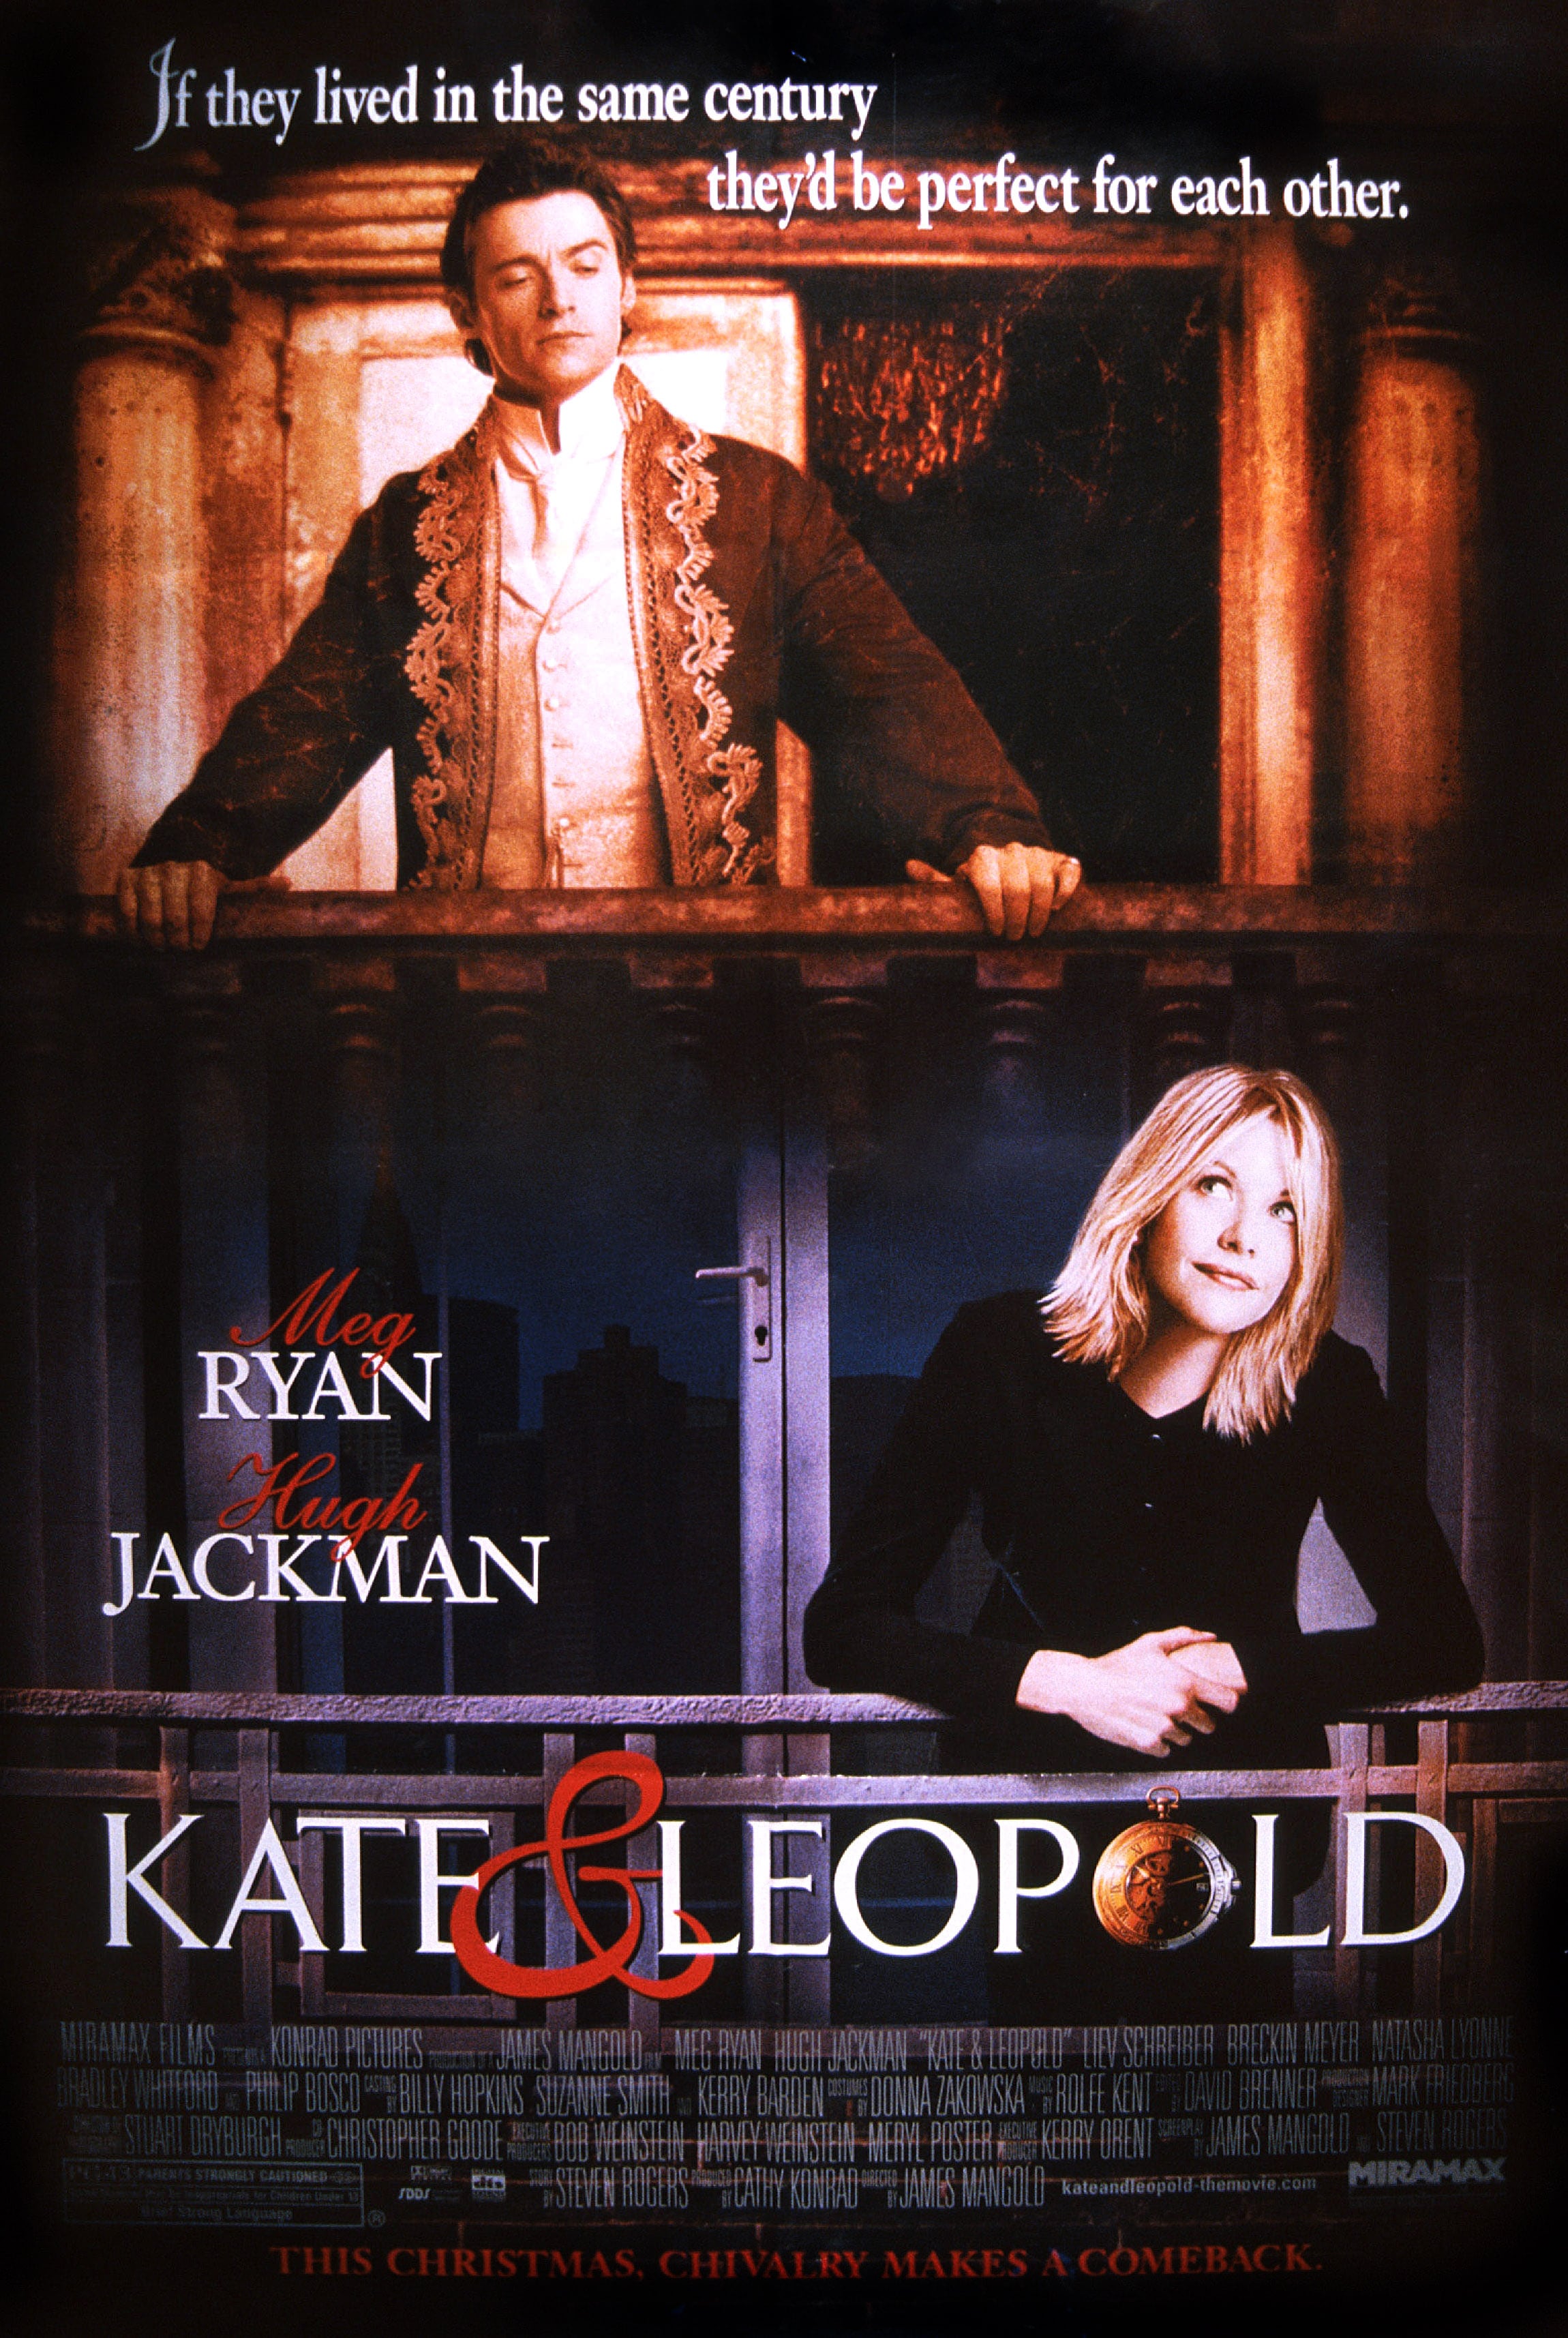 La locandina della commedia romantica "Kate&Leopold" interpretata da Meg Ryan nel 2001 accanto a Huge Jackman